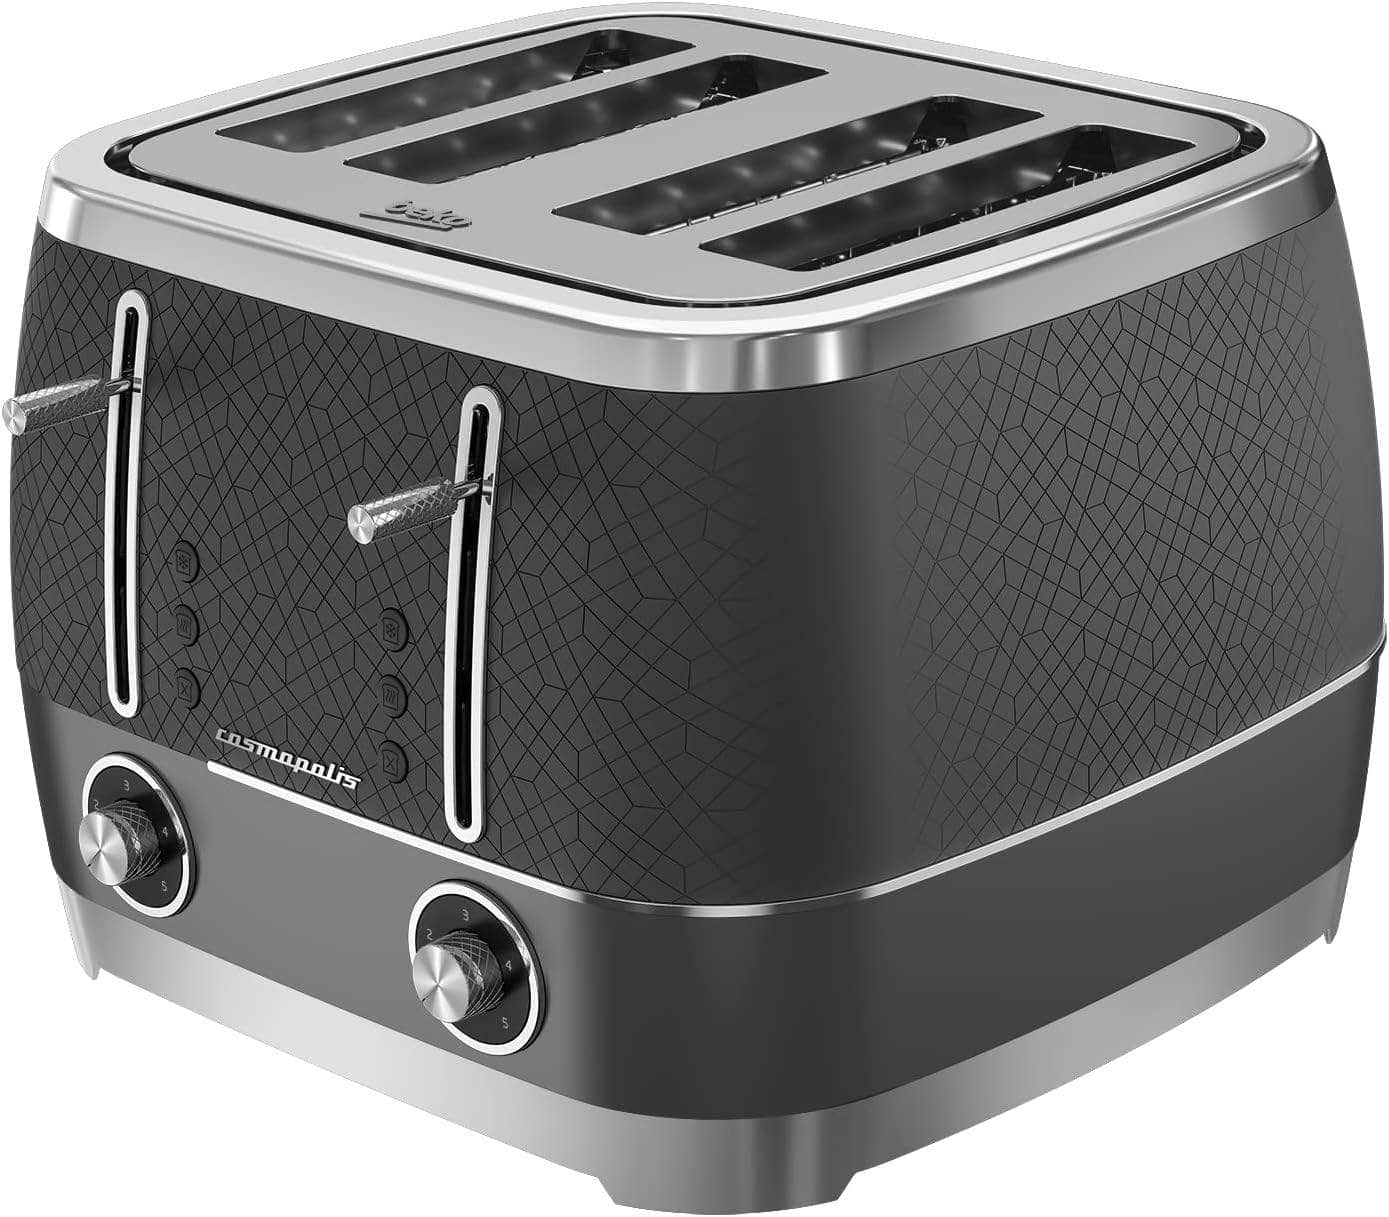 Kitchenware  -  Beko 4 Slice Toaster - Grey & Chrome  -  60005233